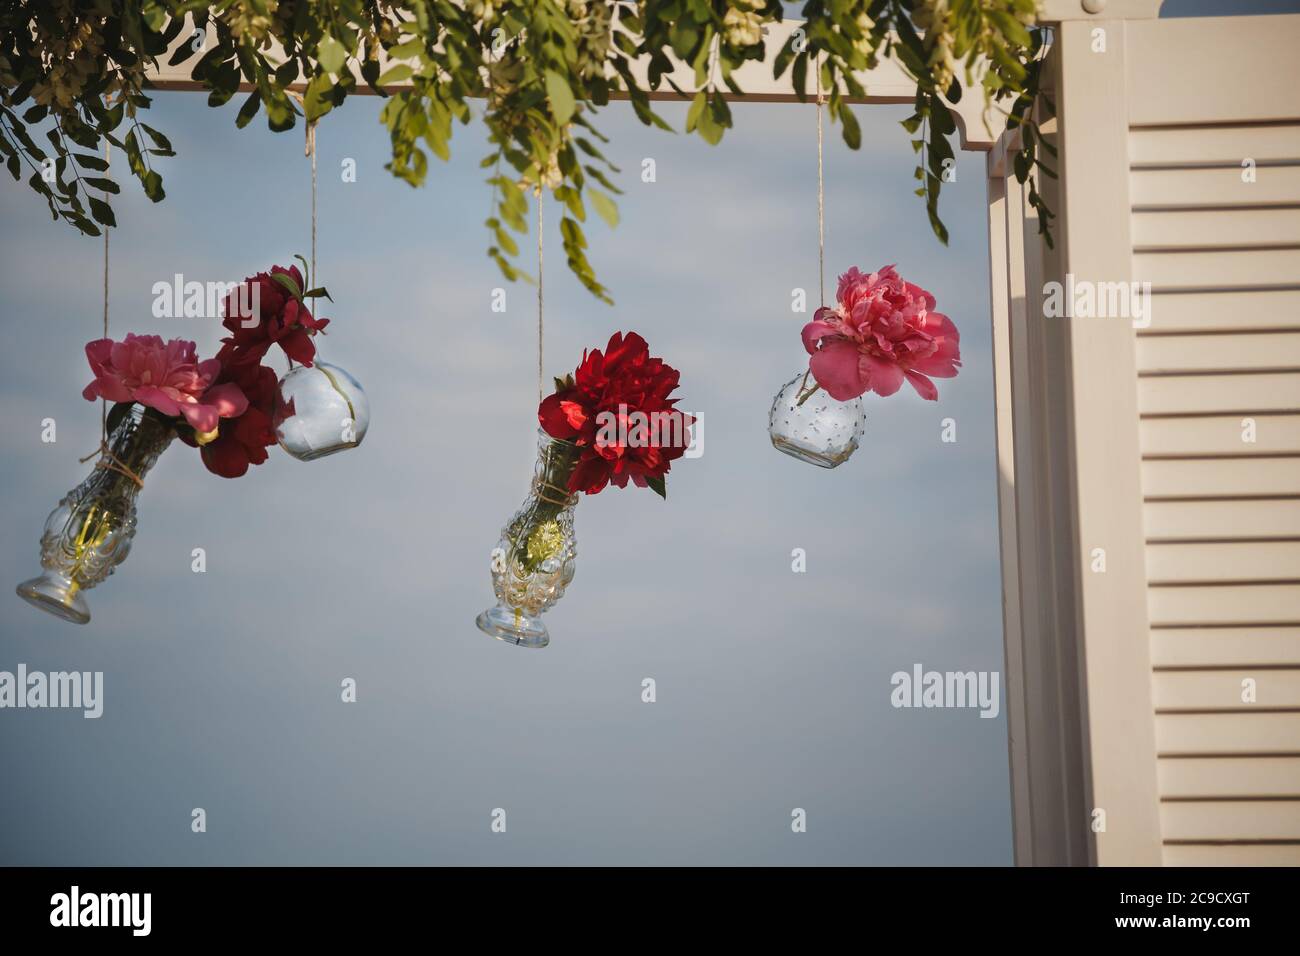 Décoration florale originale sous forme de mini vases et bouquets de fleurs accrochés à l'autel de mariage, cérémonie de mariage sur la plage extérieure Banque D'Images